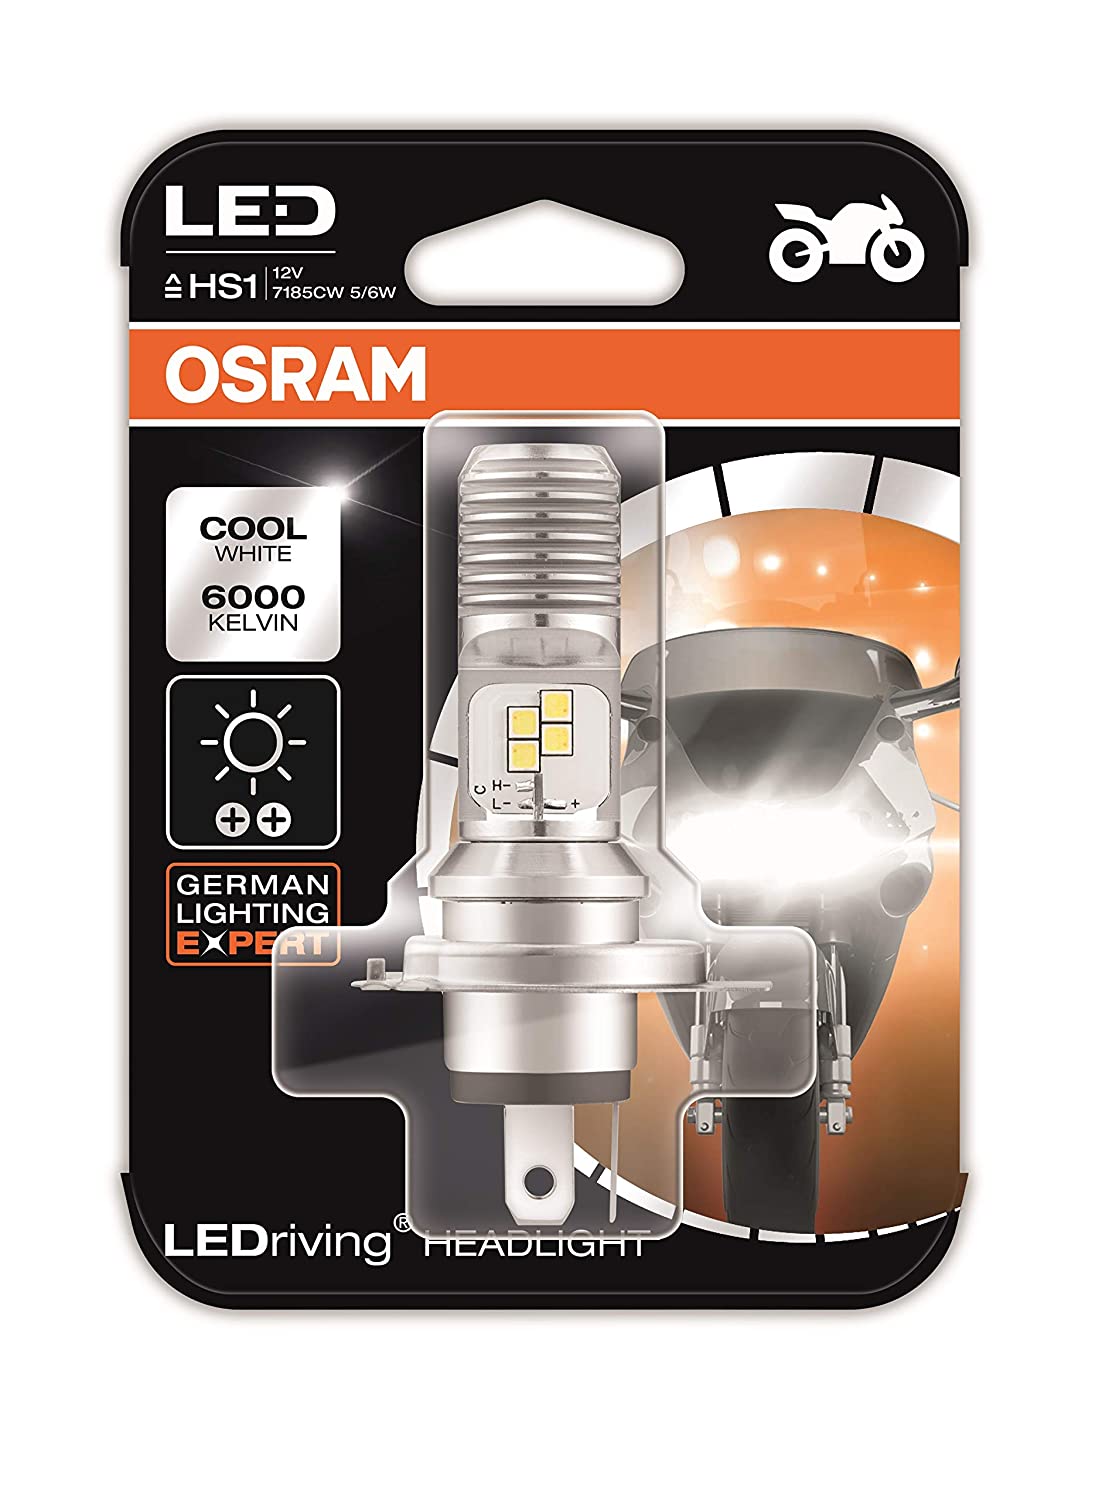 OSRAM LEDriving HEADLIGHT for bikes HS1 7285CW 5/6W 12V PX43T